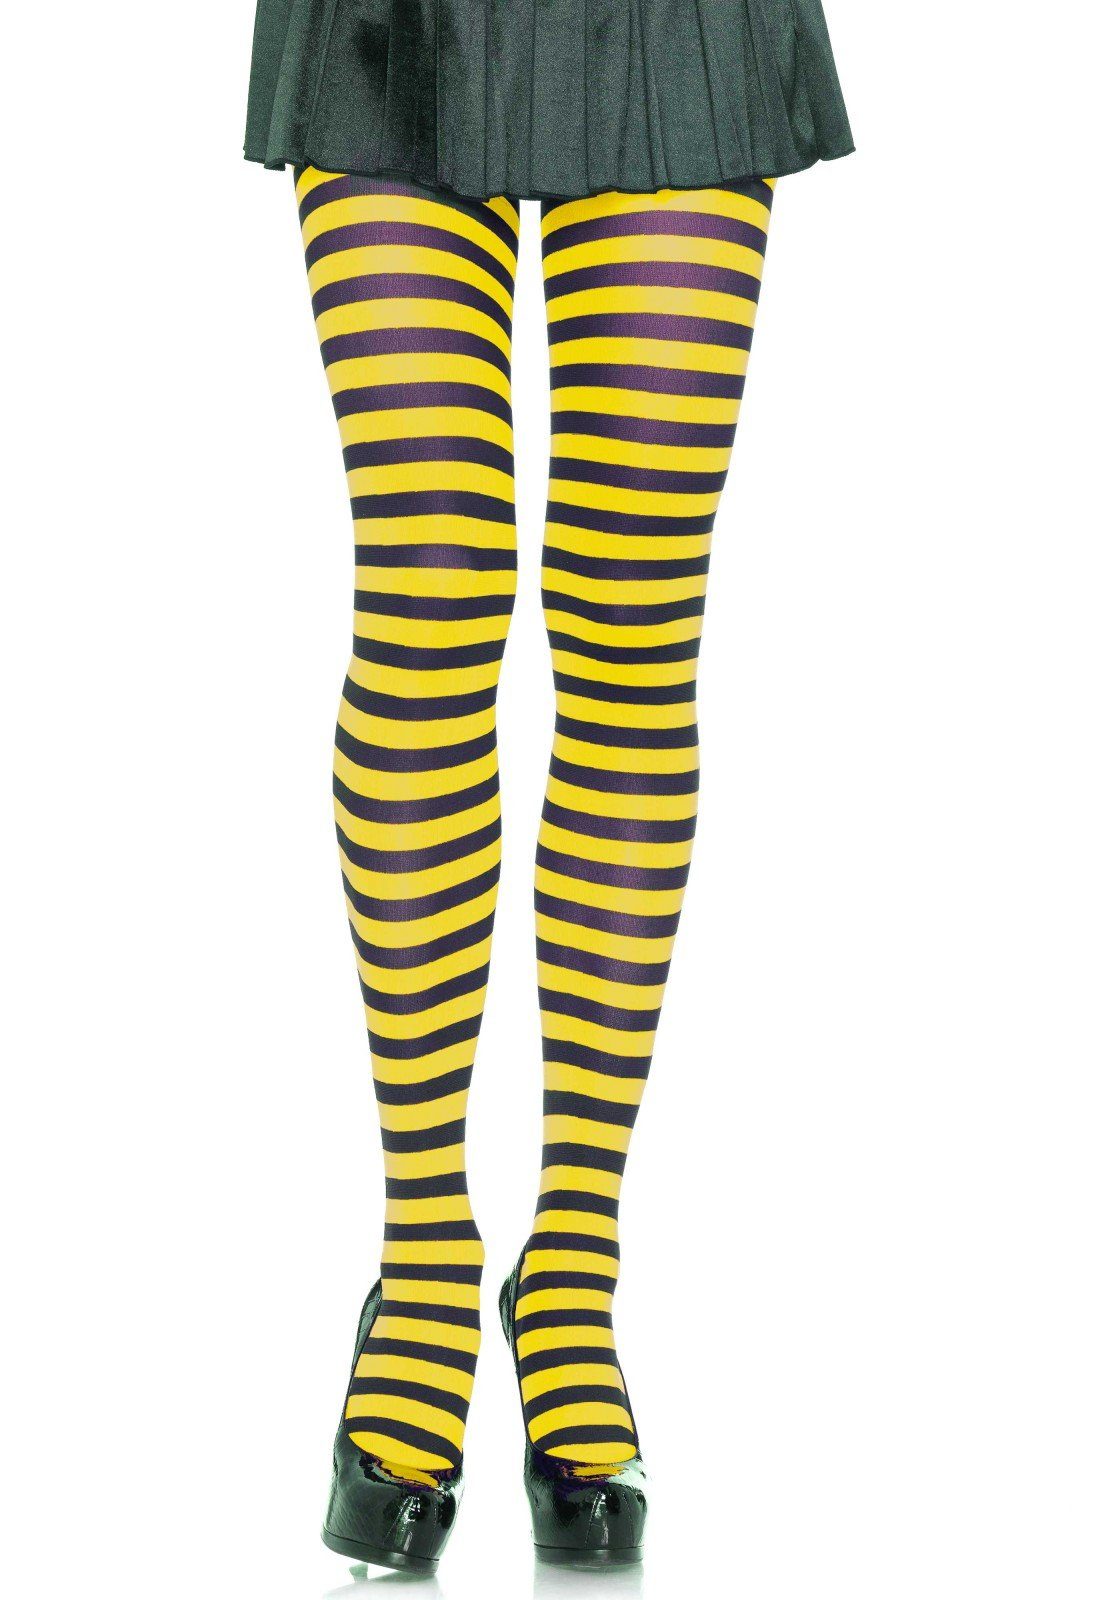 Leg Avenue Strumpfhose »Damen Strumpfhose quer geringelt gestreift schwarz  gelb Einheitsgröße ca. 36 bis 40« 70 DEN online kaufen | OTTO